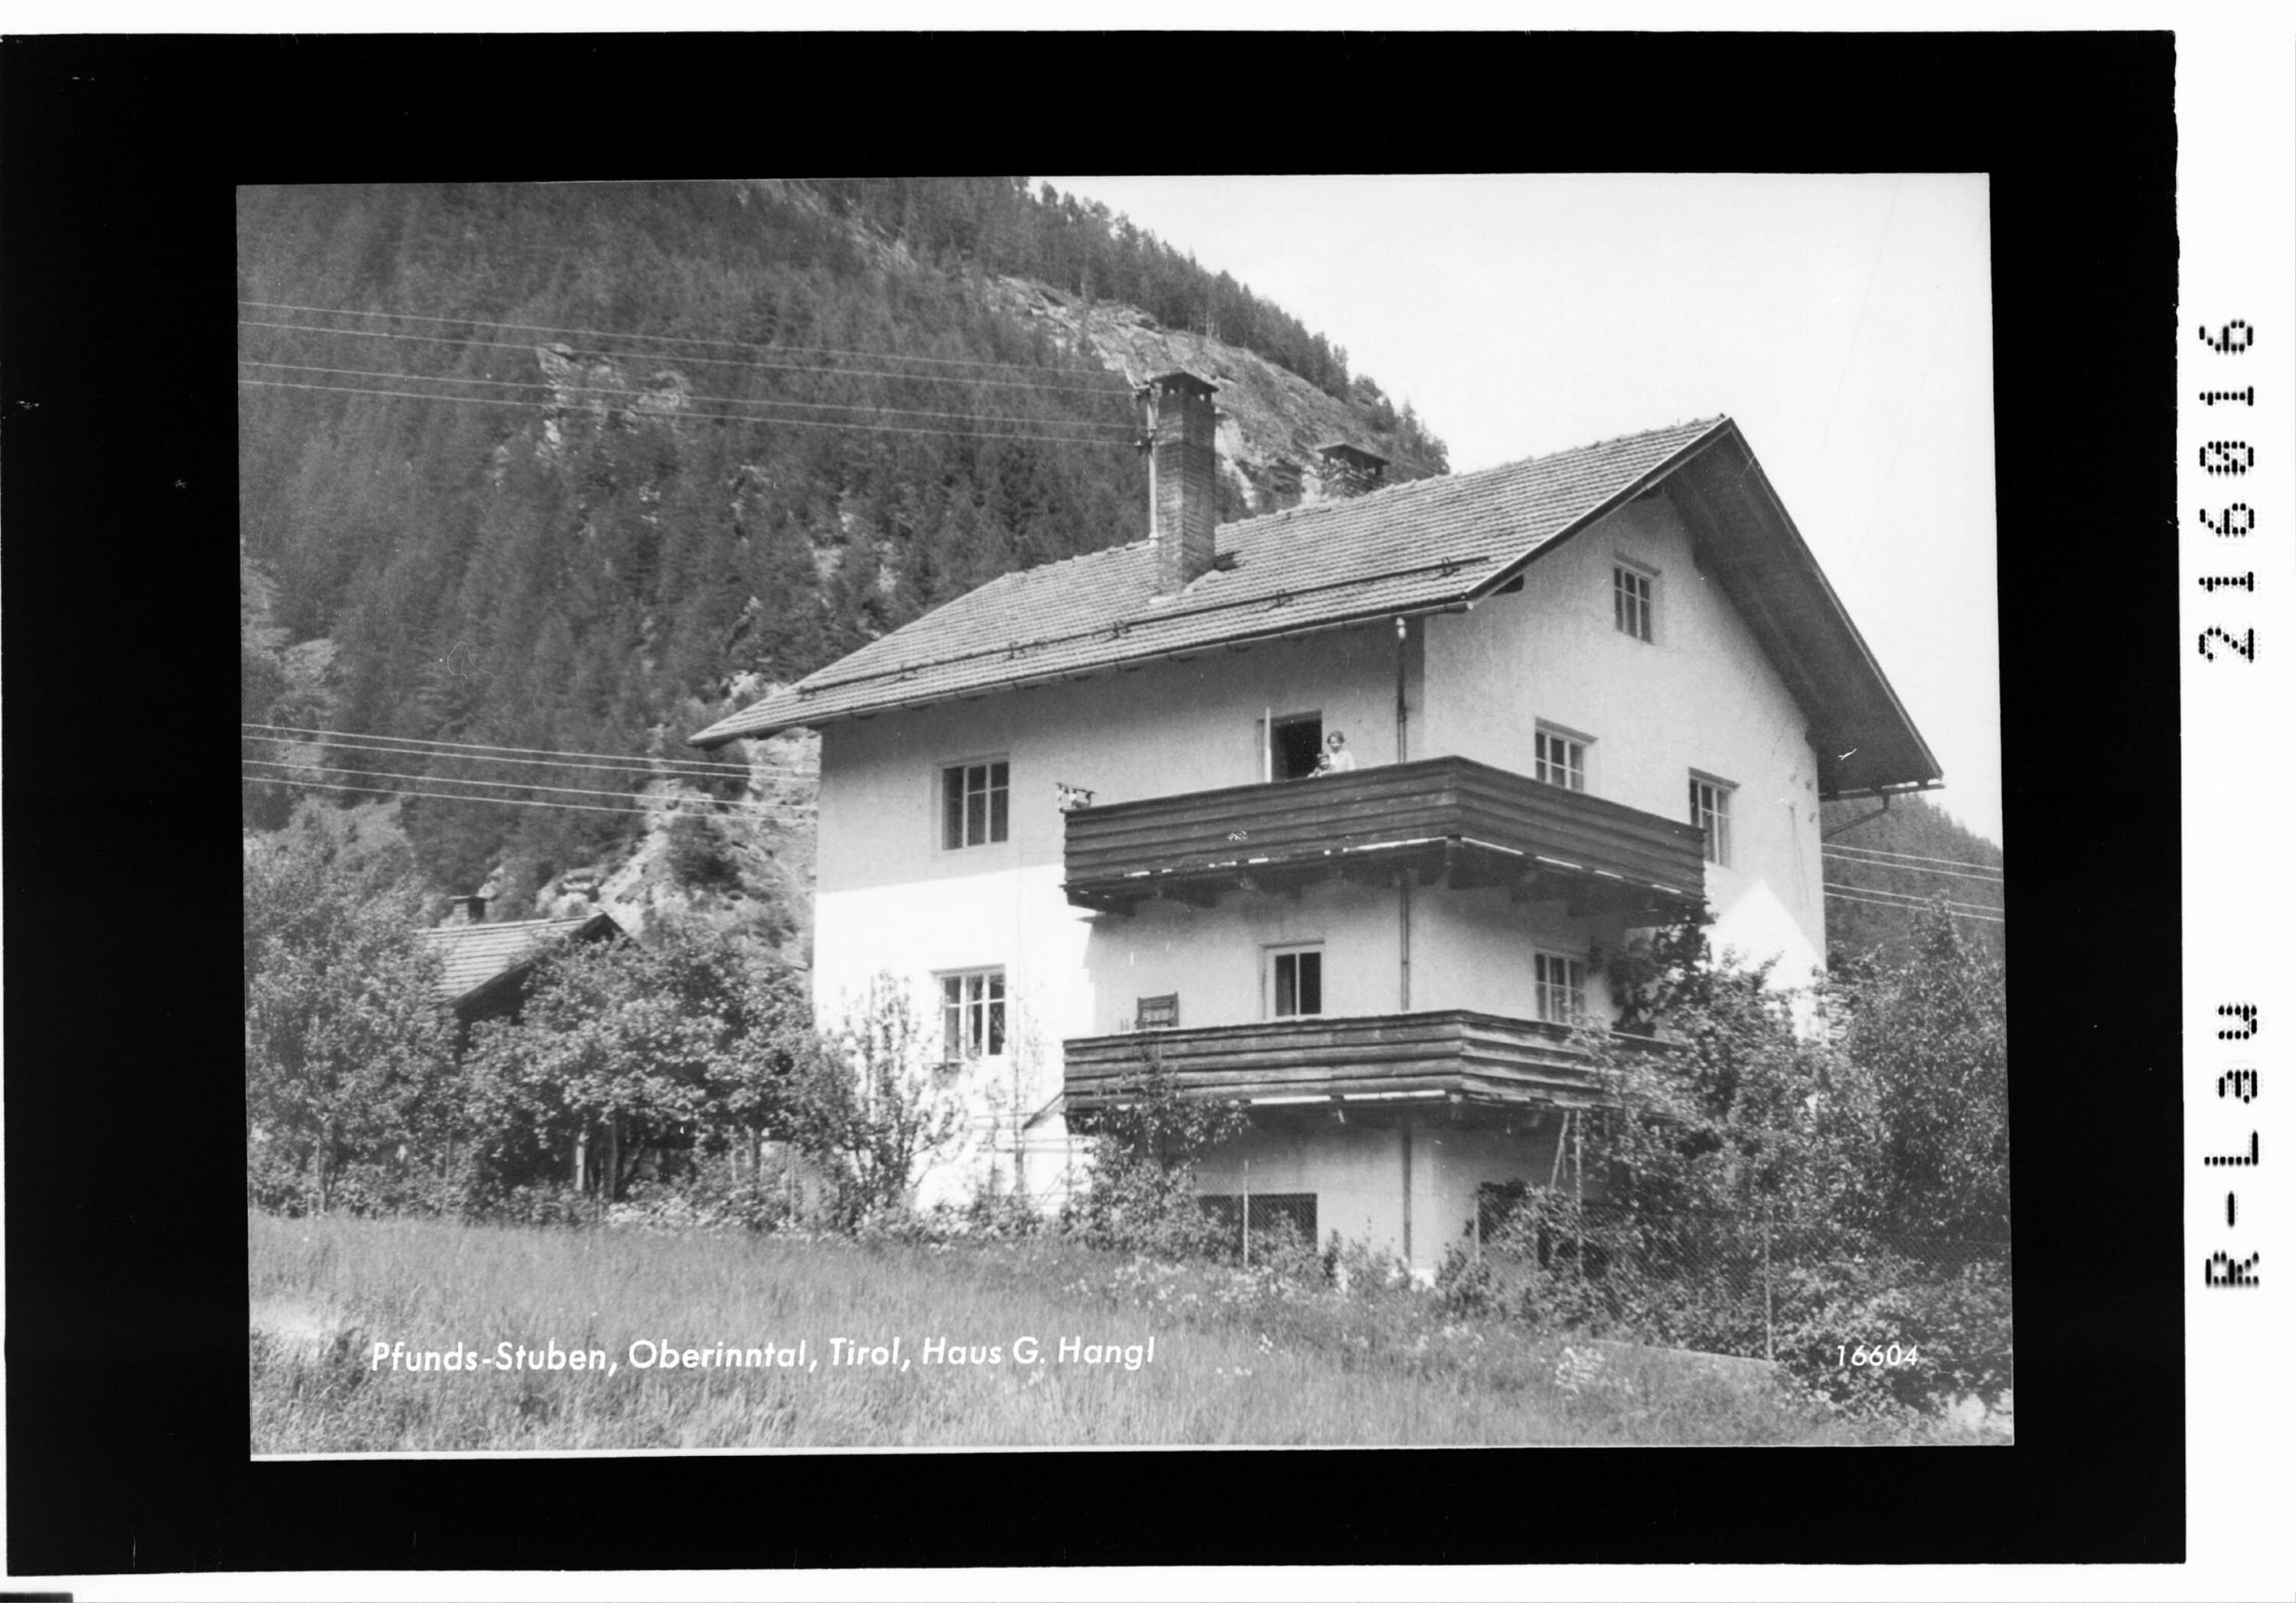 Pfunds - Stuben, Oberinntal, Tirol, Haus G. Hangl></div>


    <hr>
    <div class=